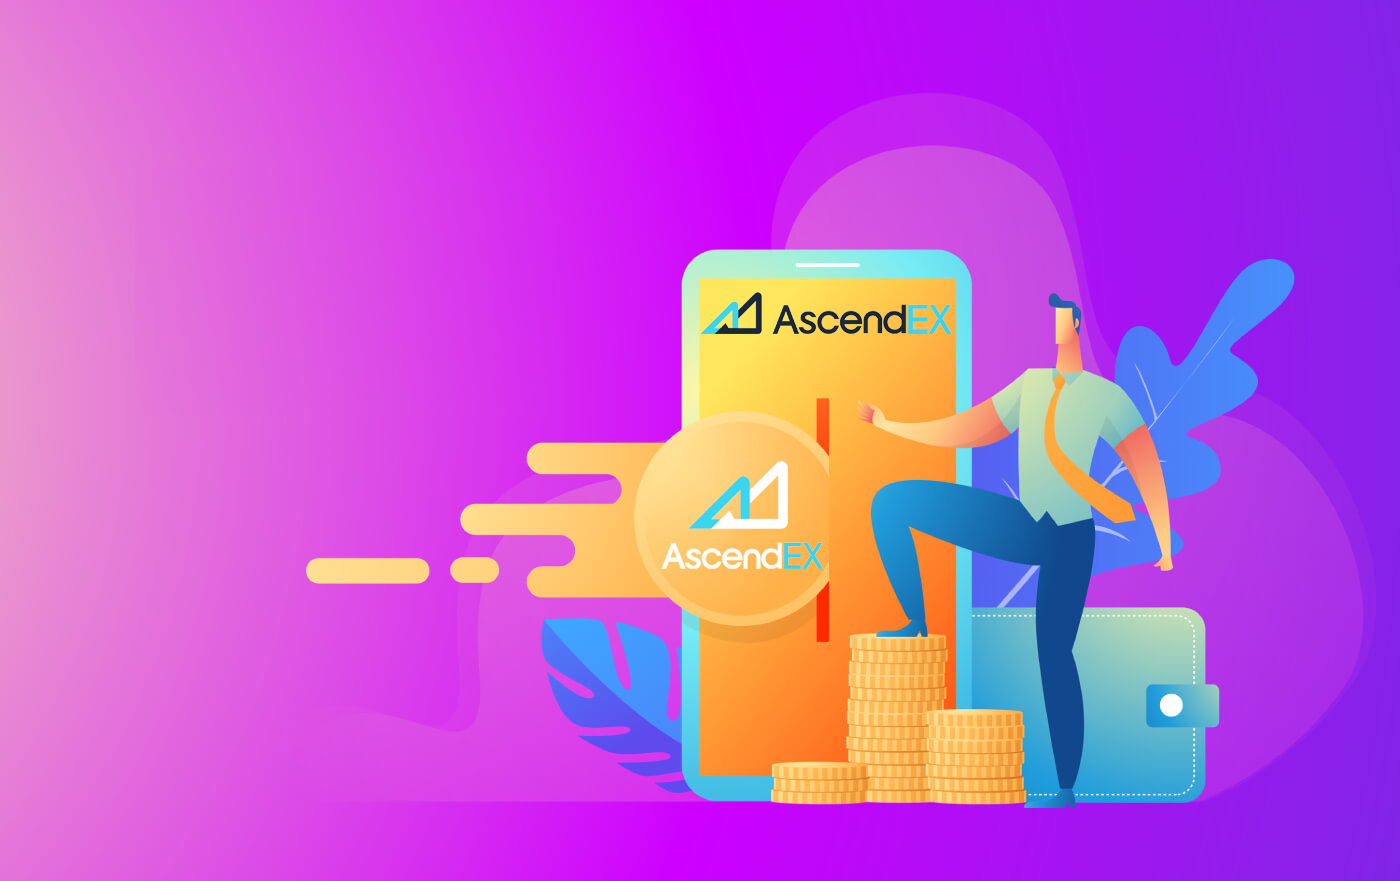  AscendEX में लॉग इन और डिपॉजिट कैसे करें